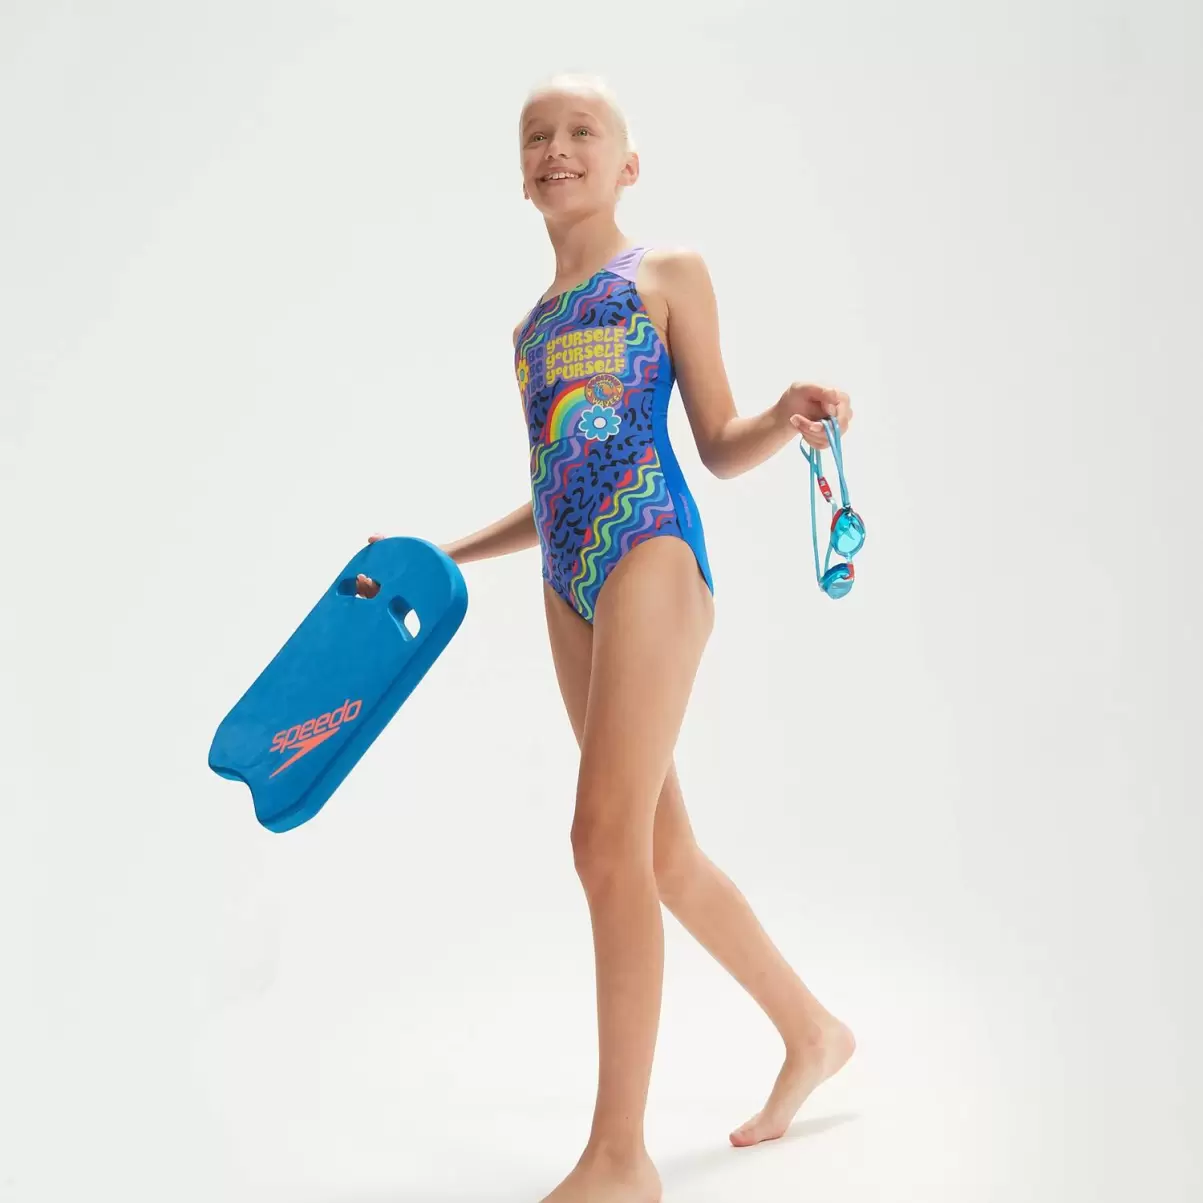 Kinder Speedo Mädchen Bademode Splashback-Badeanzug Für Mädchen Blau/Flieder - 2